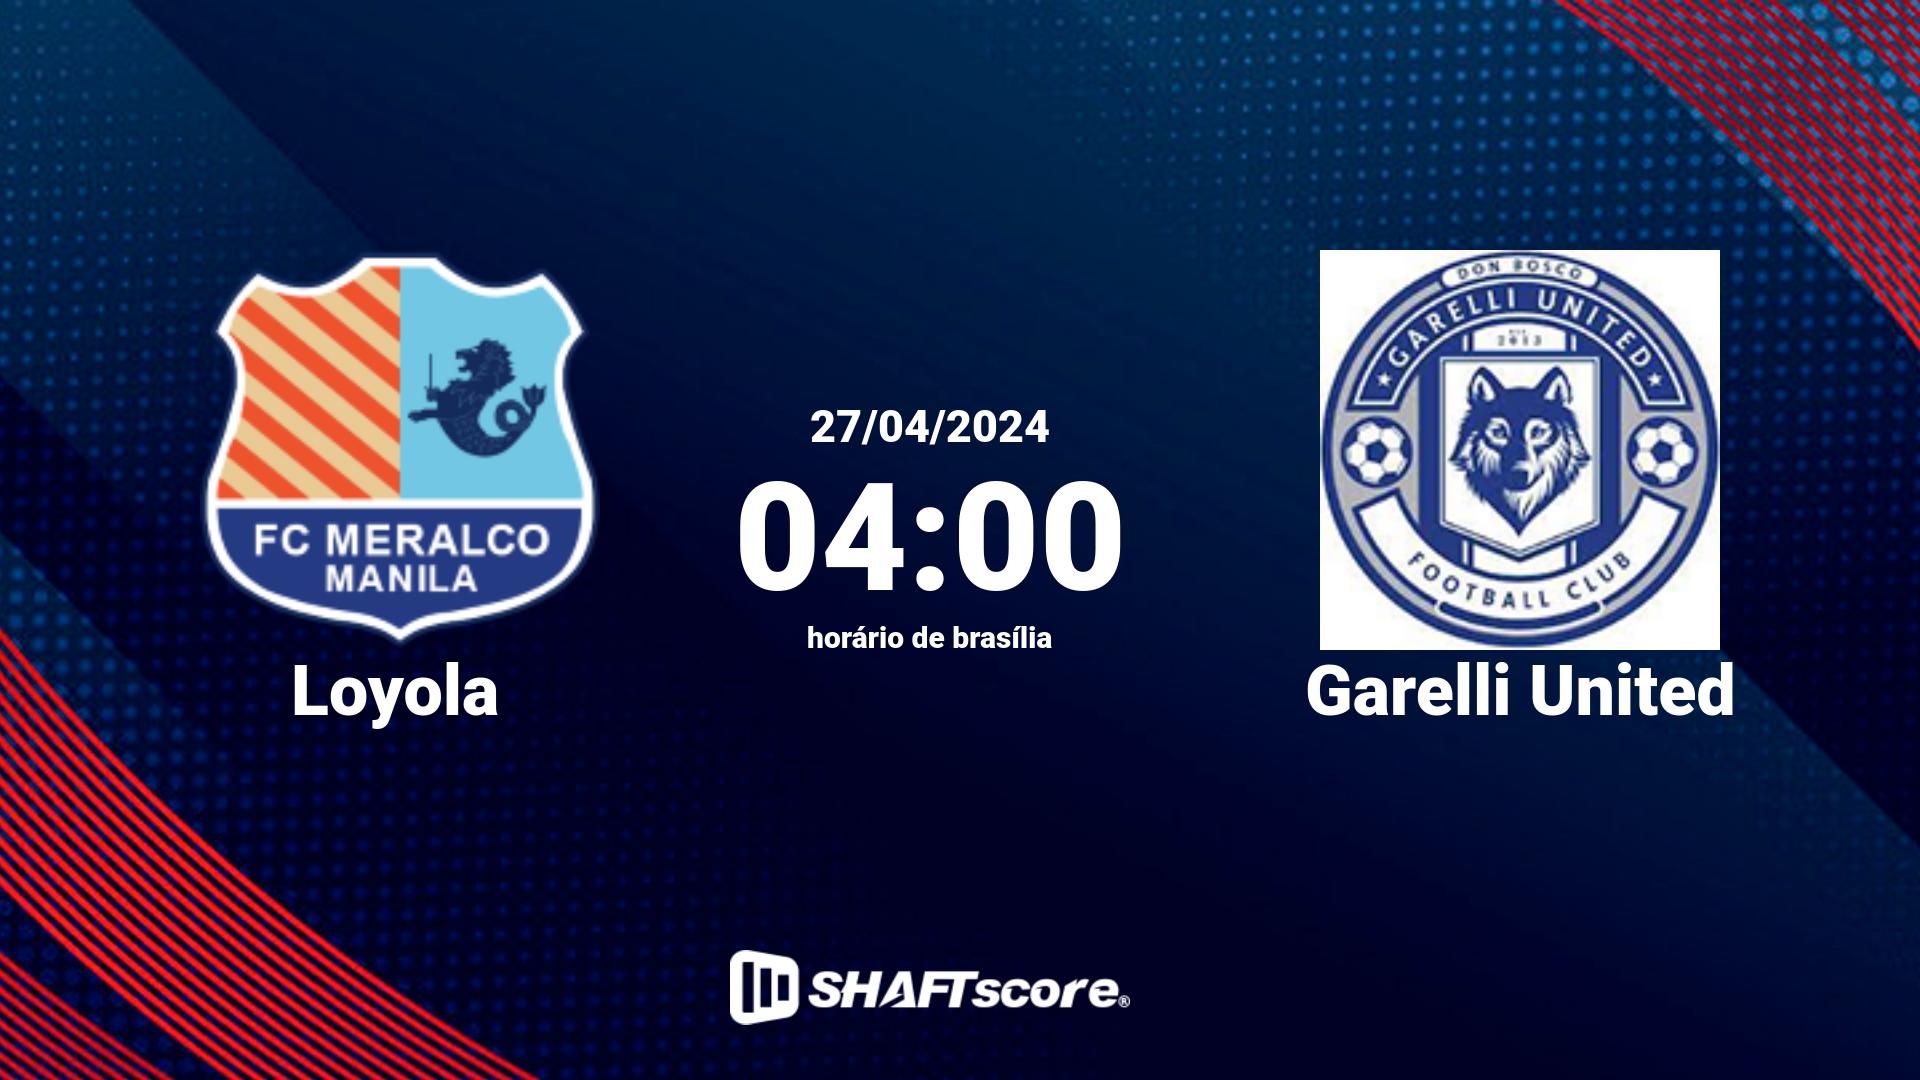 Estatísticas do jogo Loyola vs Garelli United 27.04 04:00